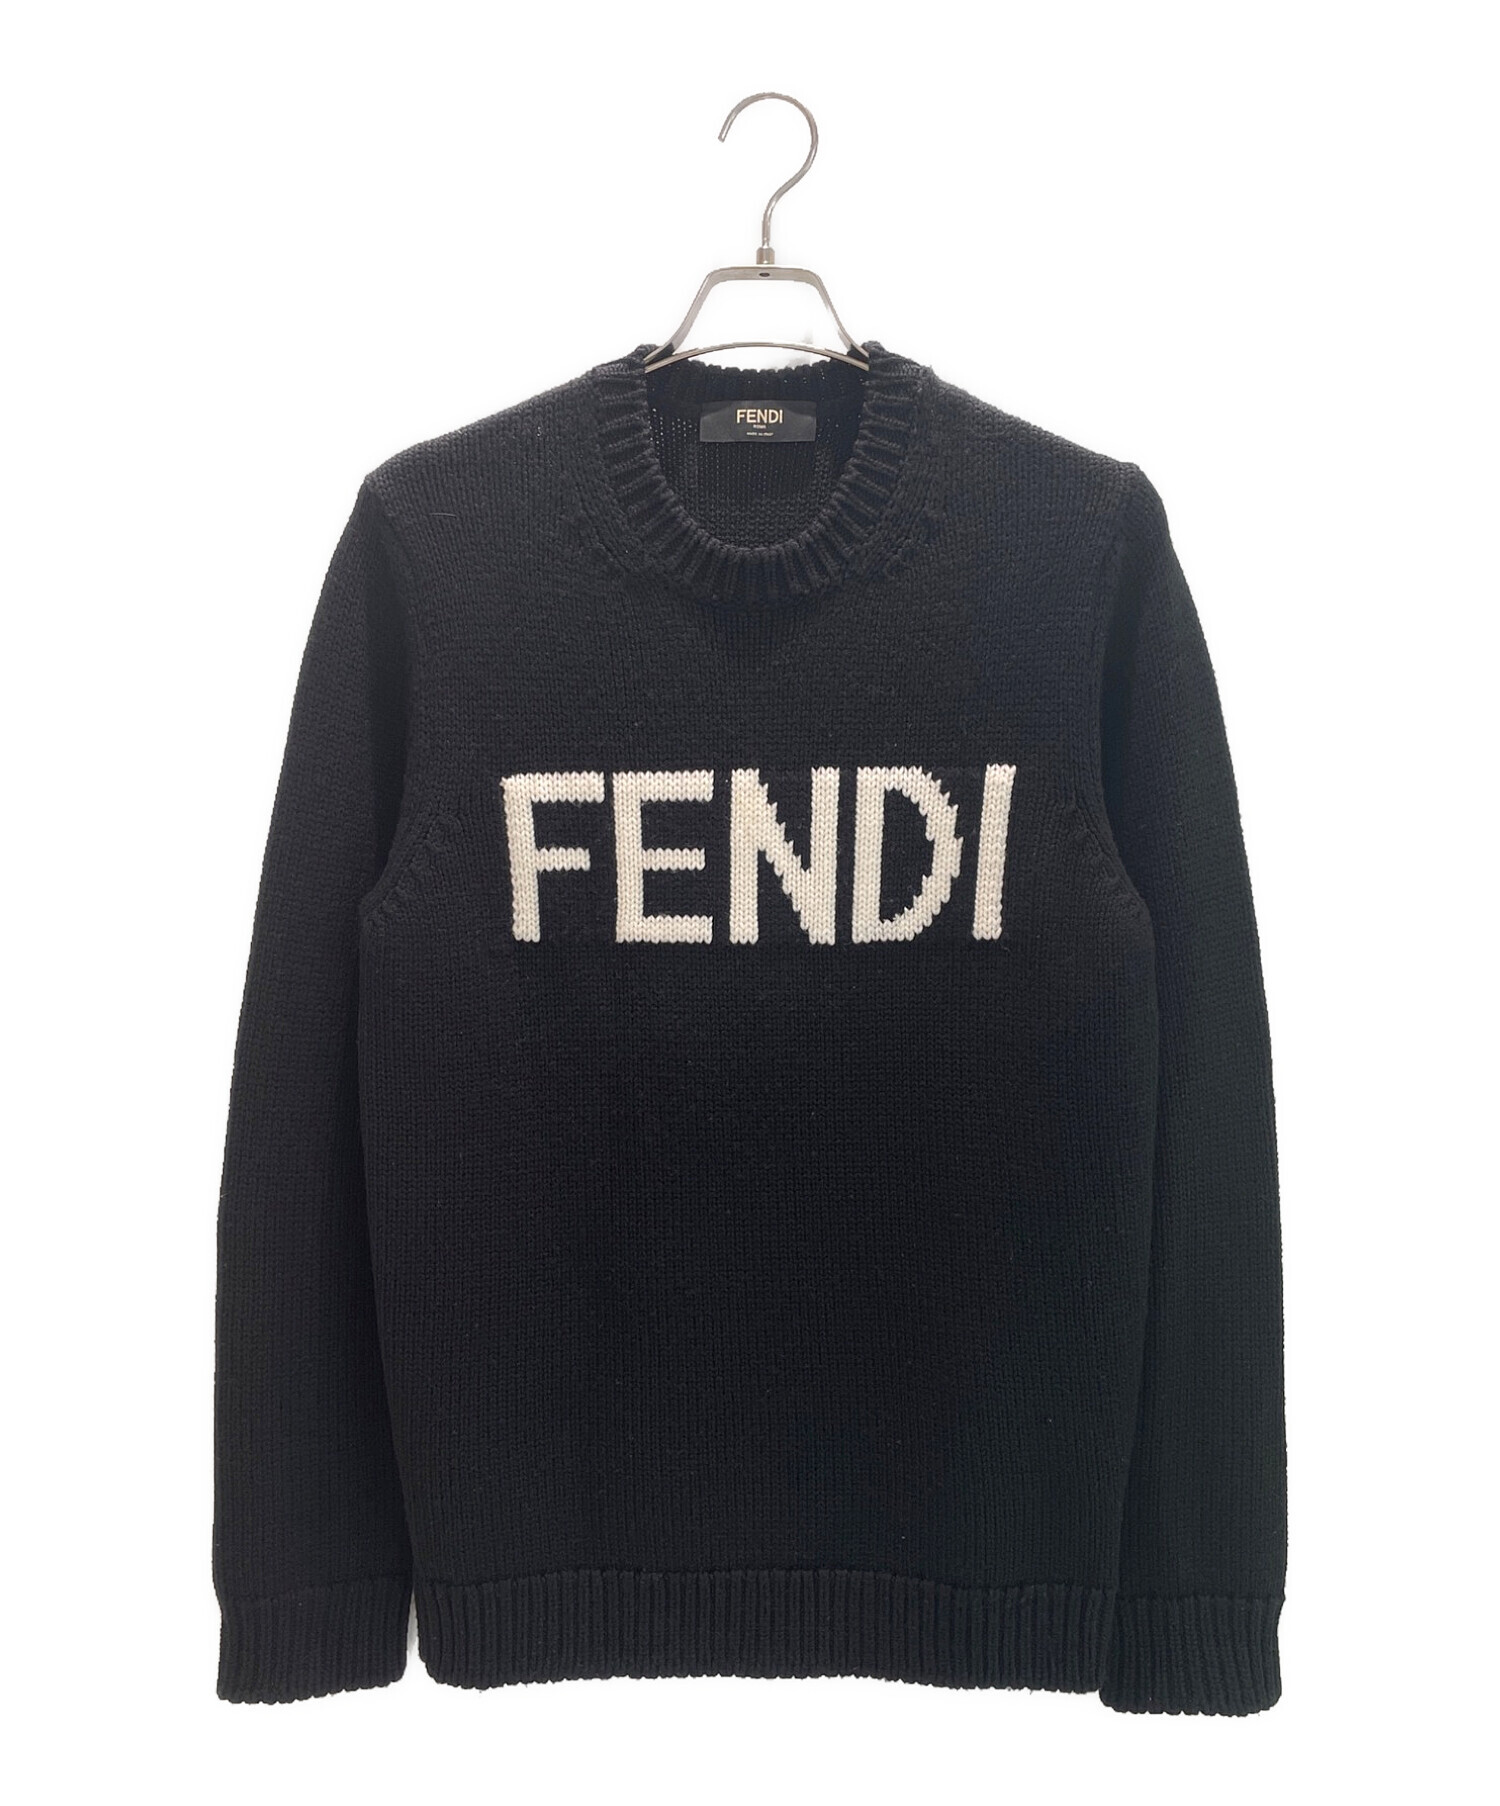 FENDI フェンディ フロントロゴニット セーター - ニット/セーター